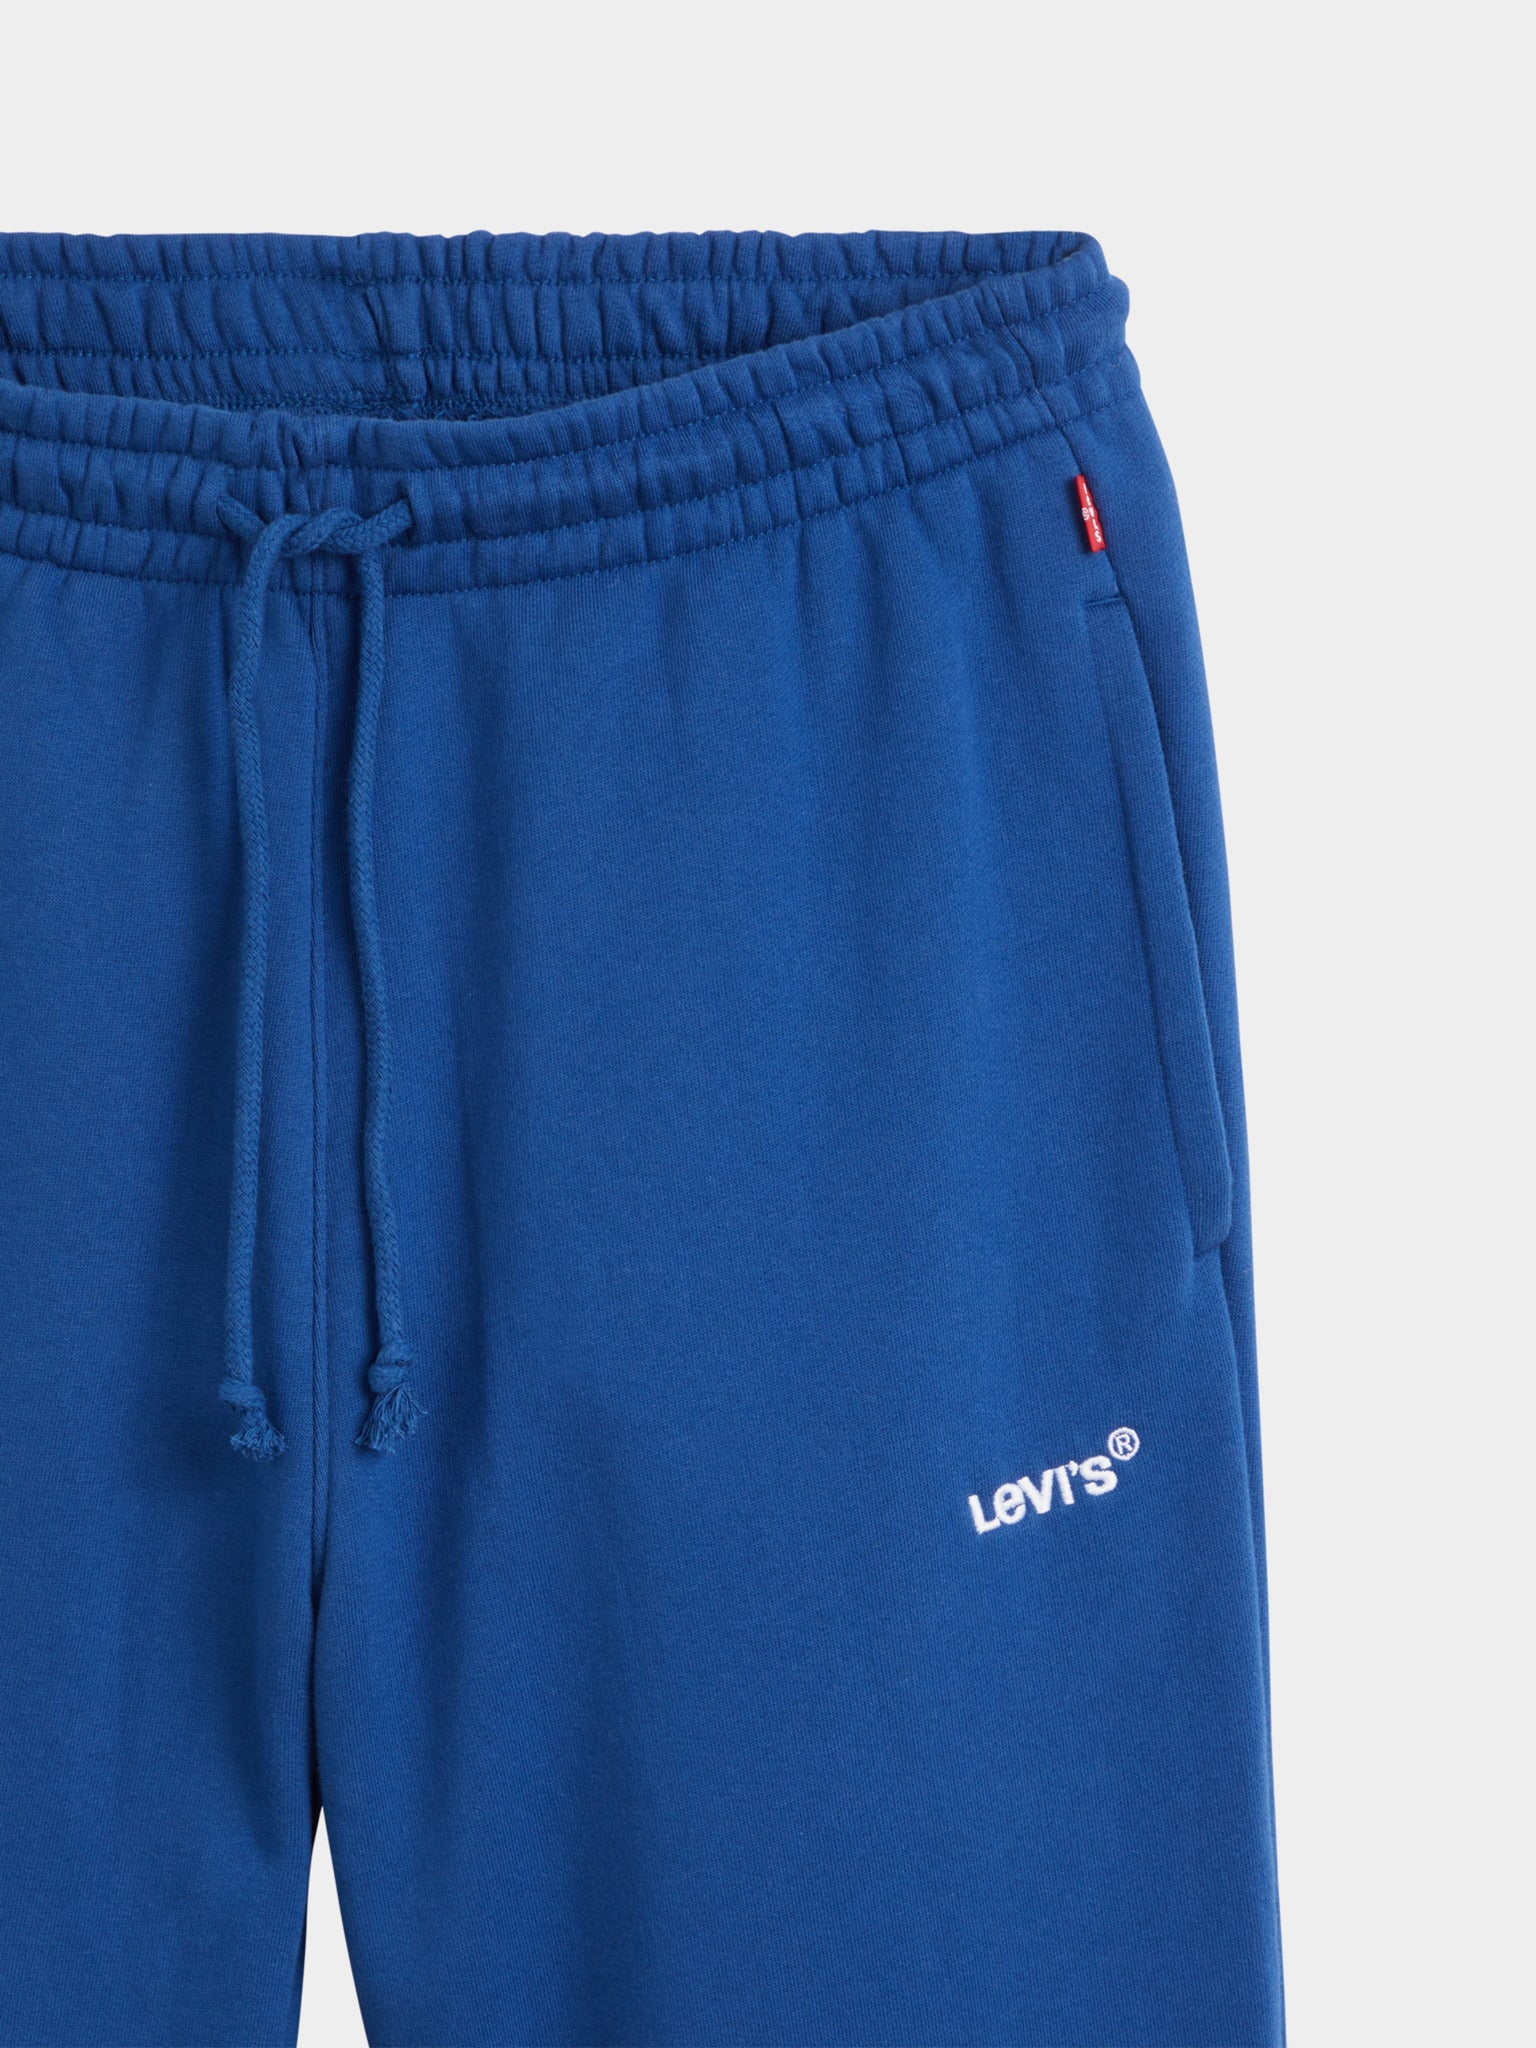 Pantaloni unisex Levi s - bleu